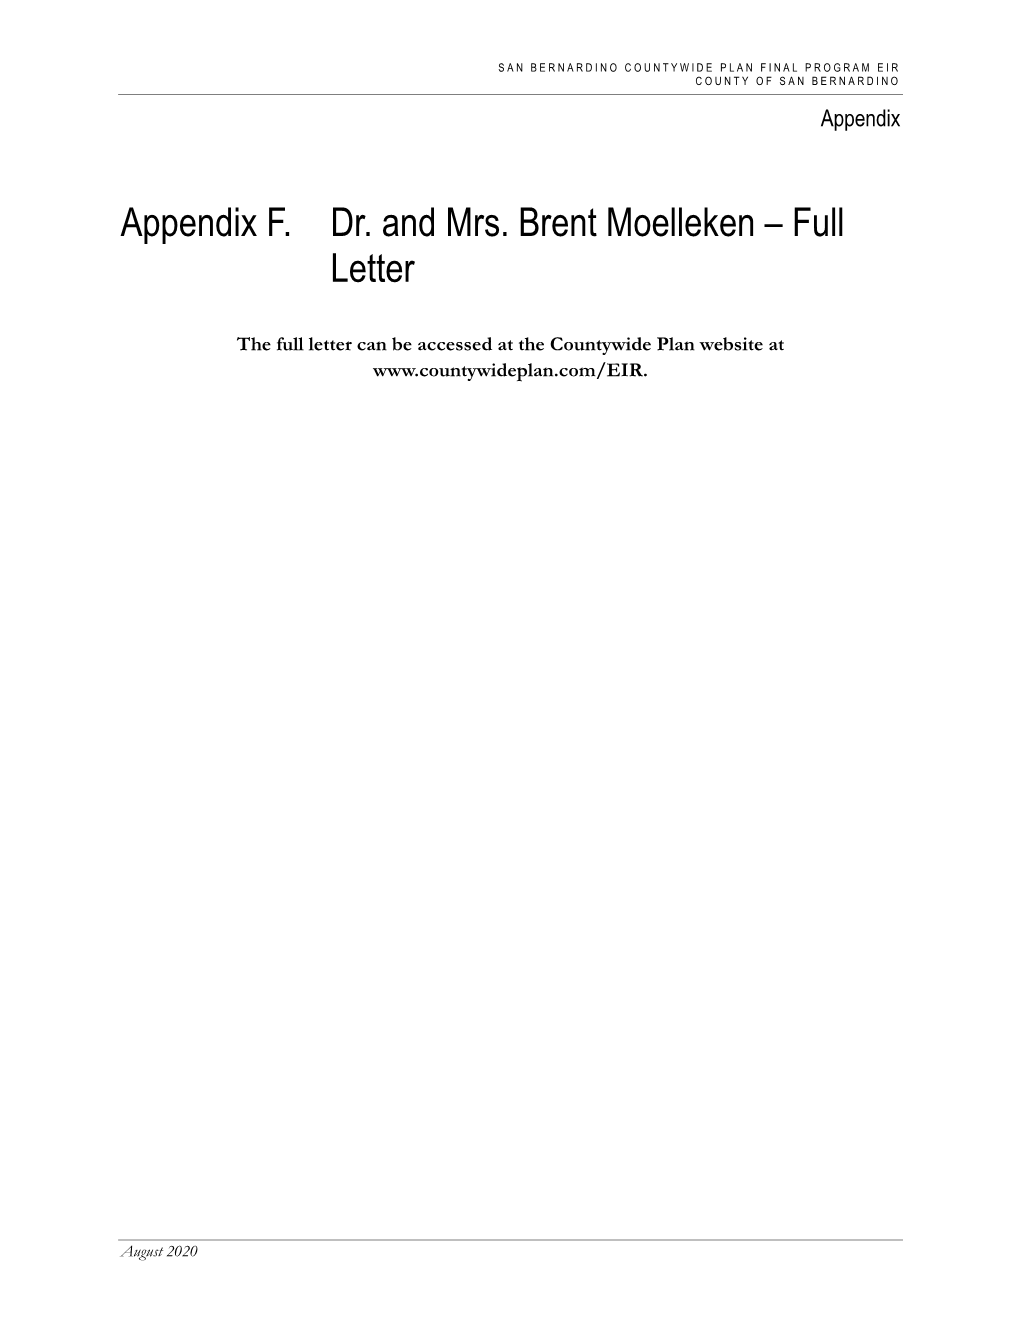 Appendix F. Dr. and Mrs. Brent Moelleken – Full Letter